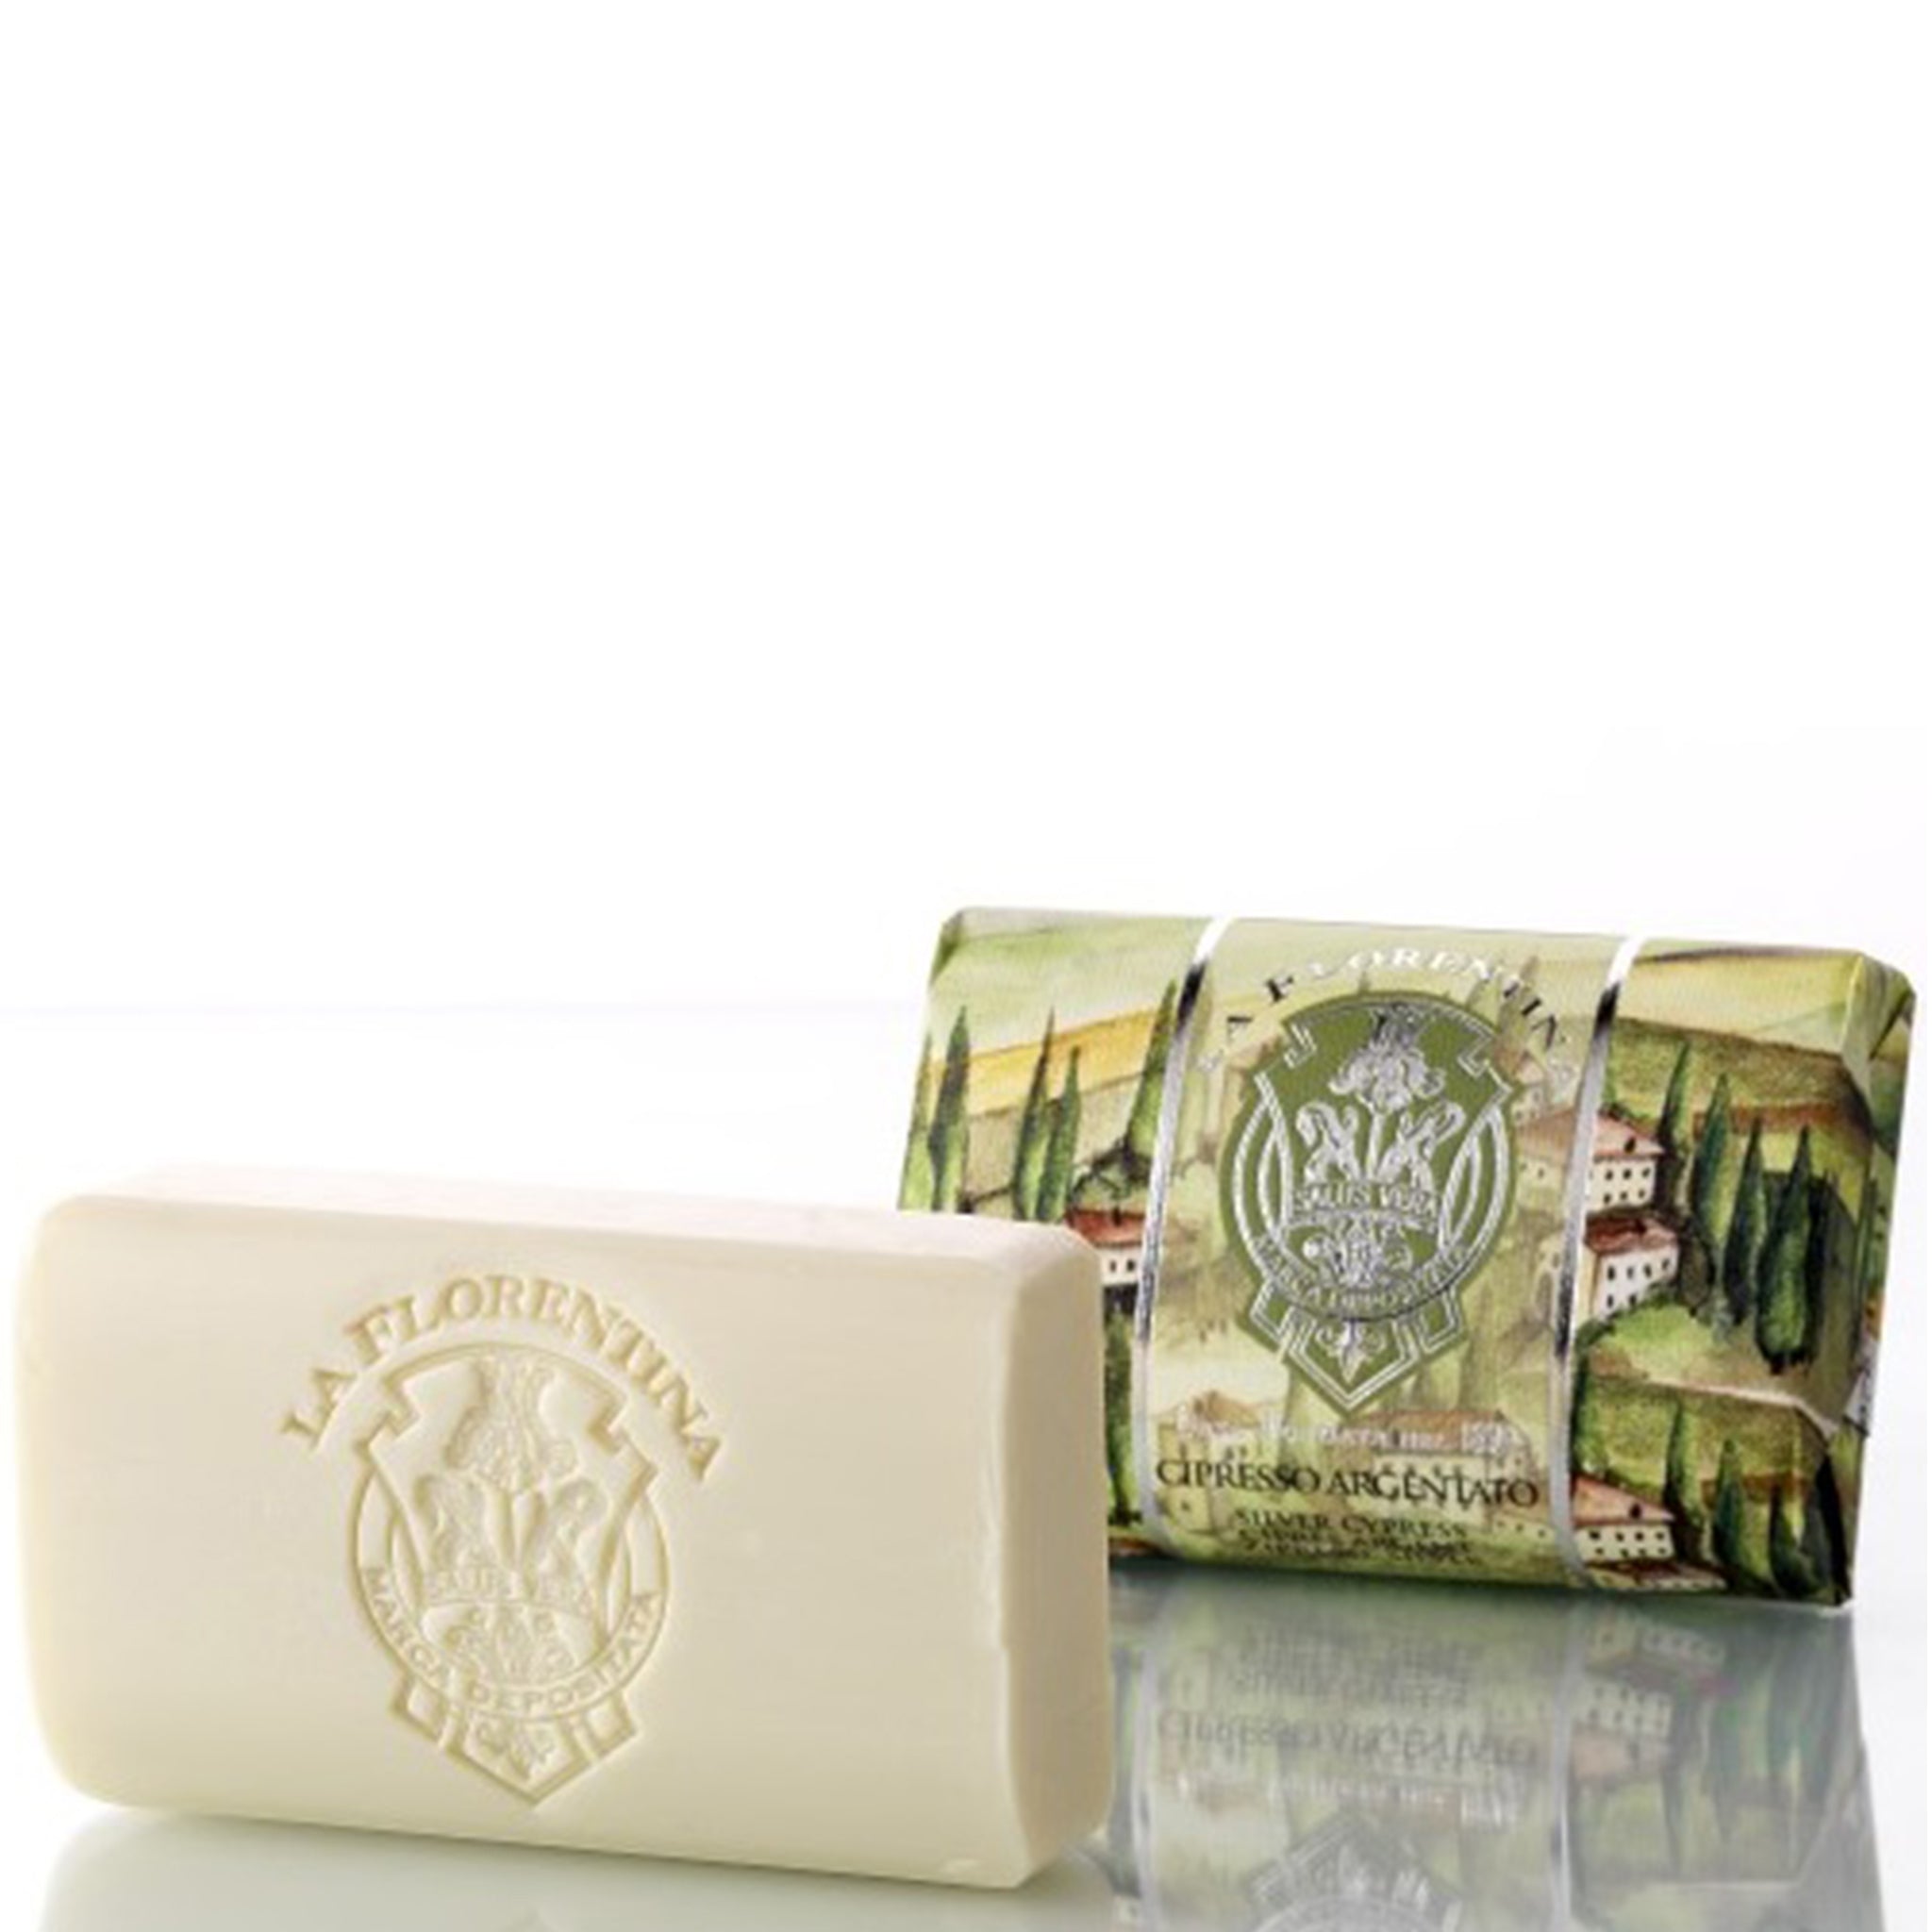 La Florentina Silver Cypress 200g Bar Soap